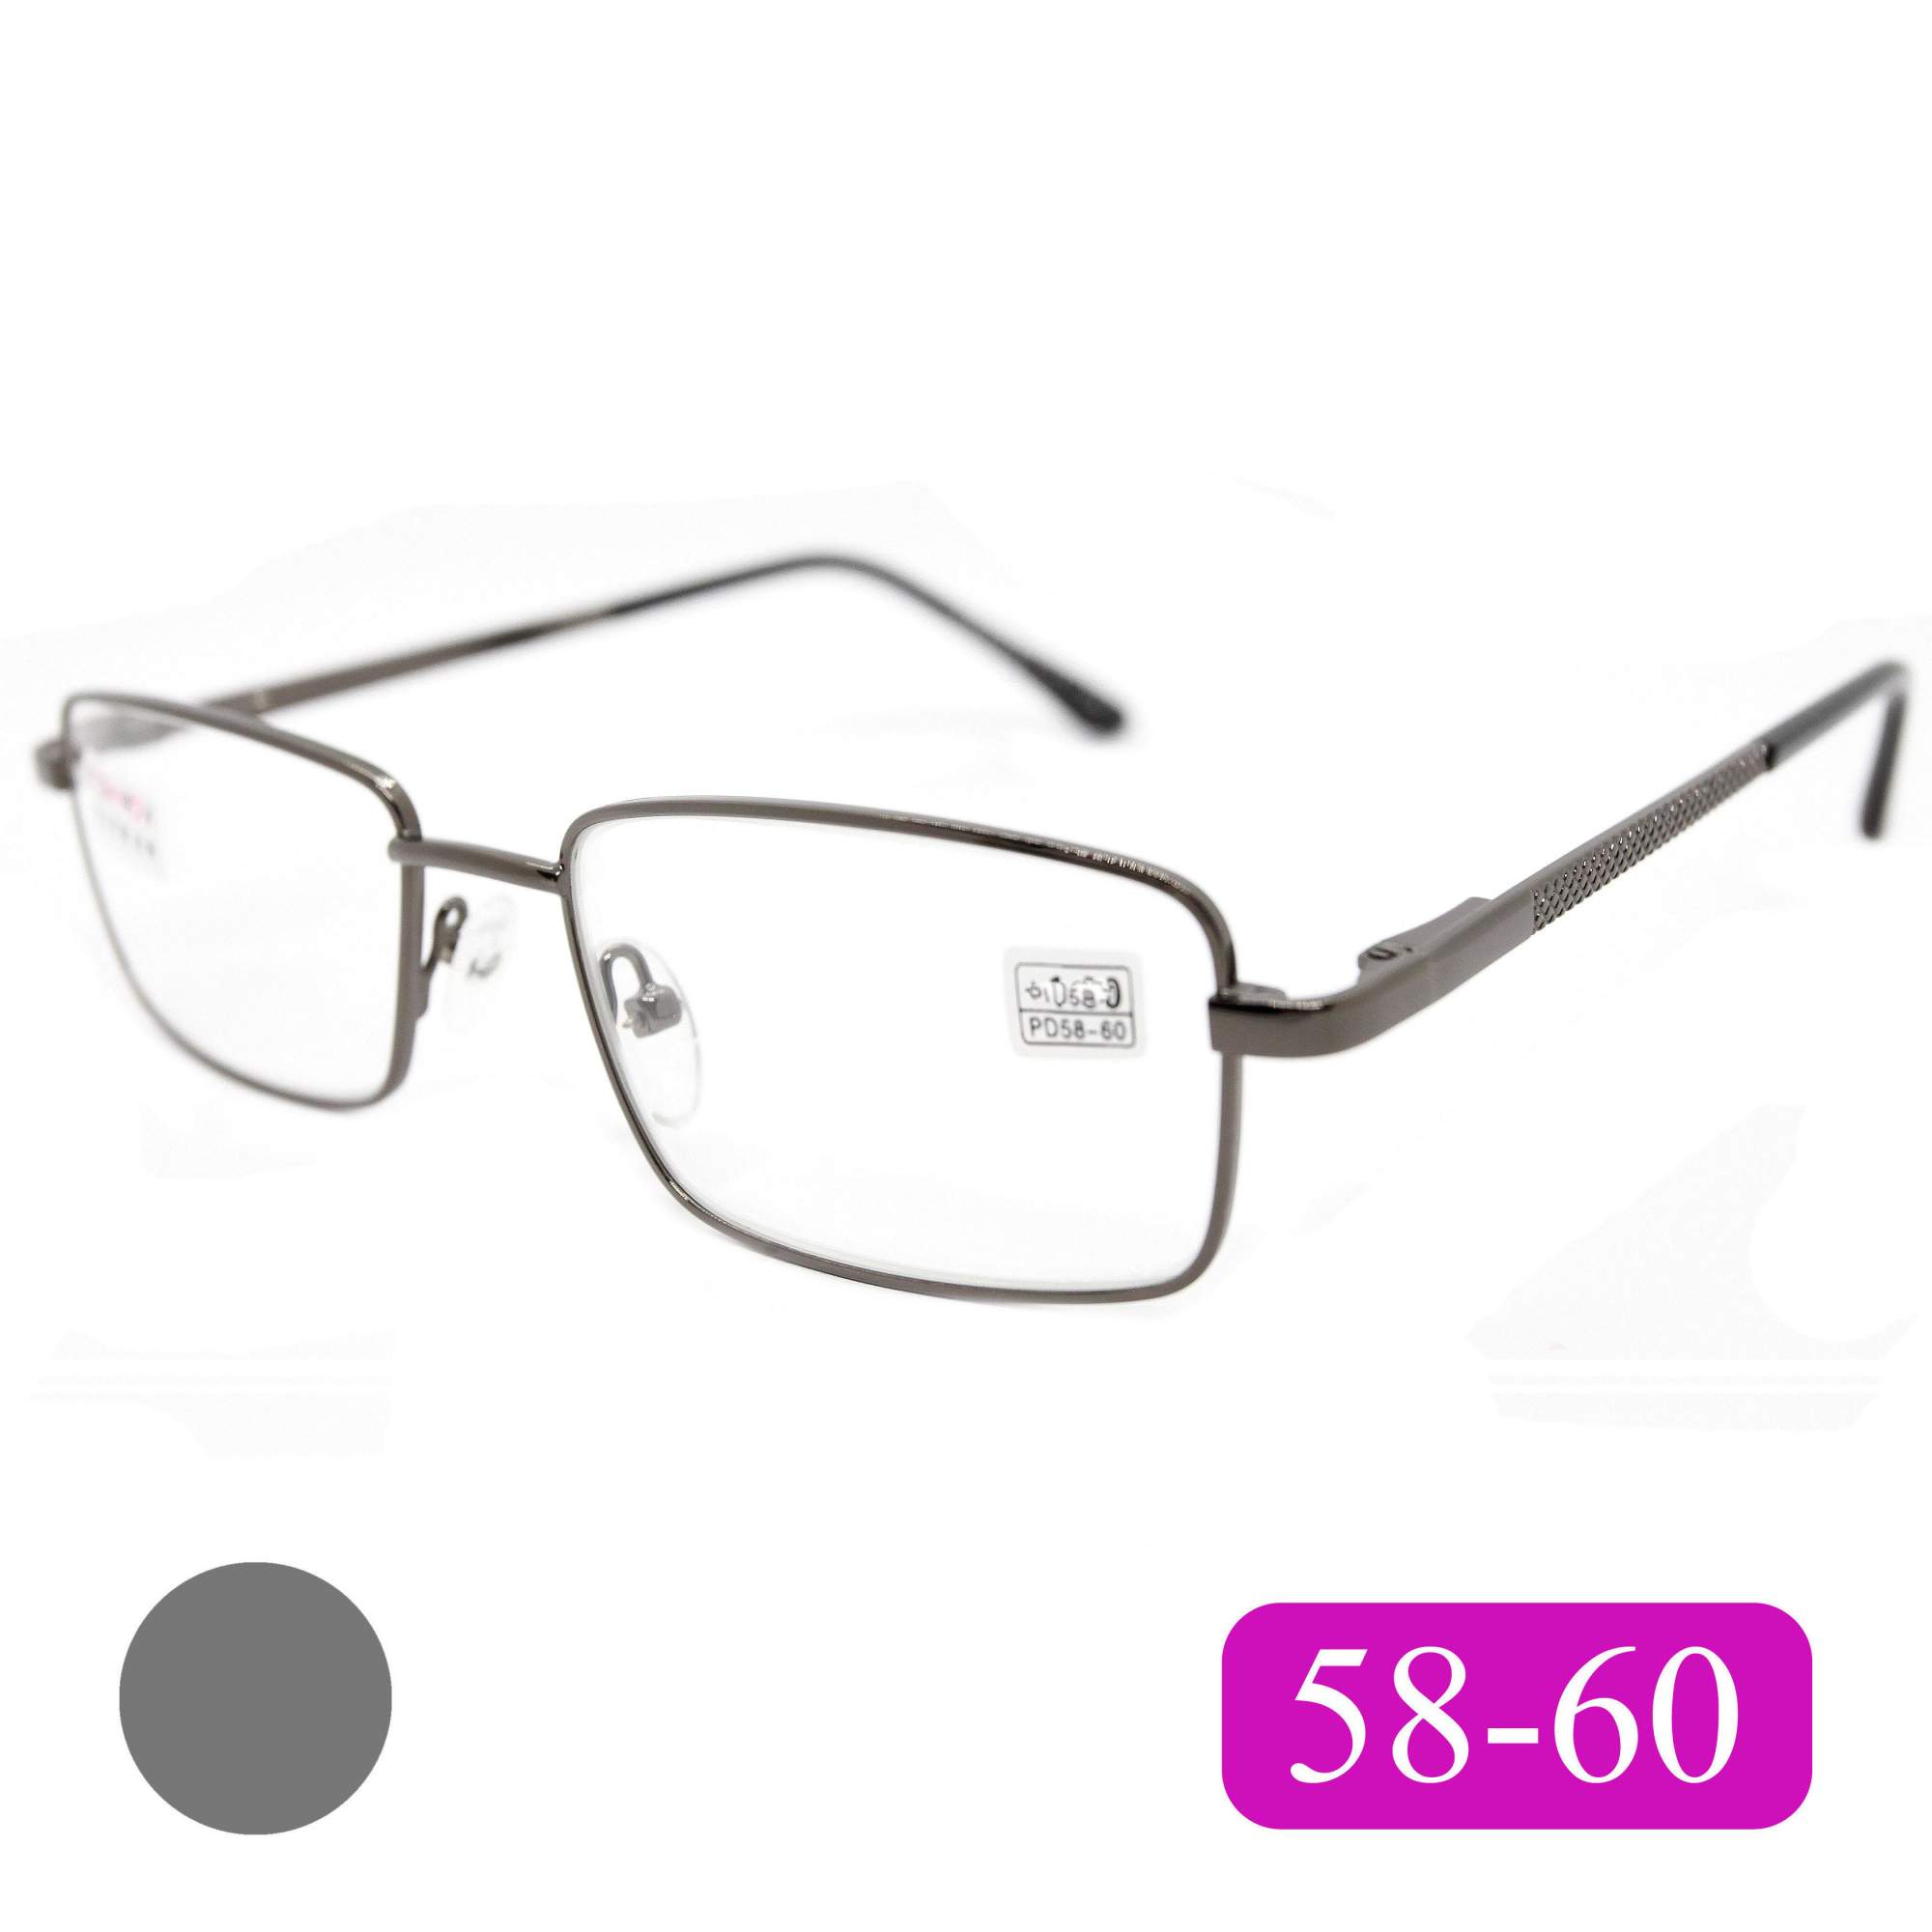 Готовые очки Fedrov 569, со стеклянной линзой, +3,50, без футляра, цвет серый, РЦ 58-60